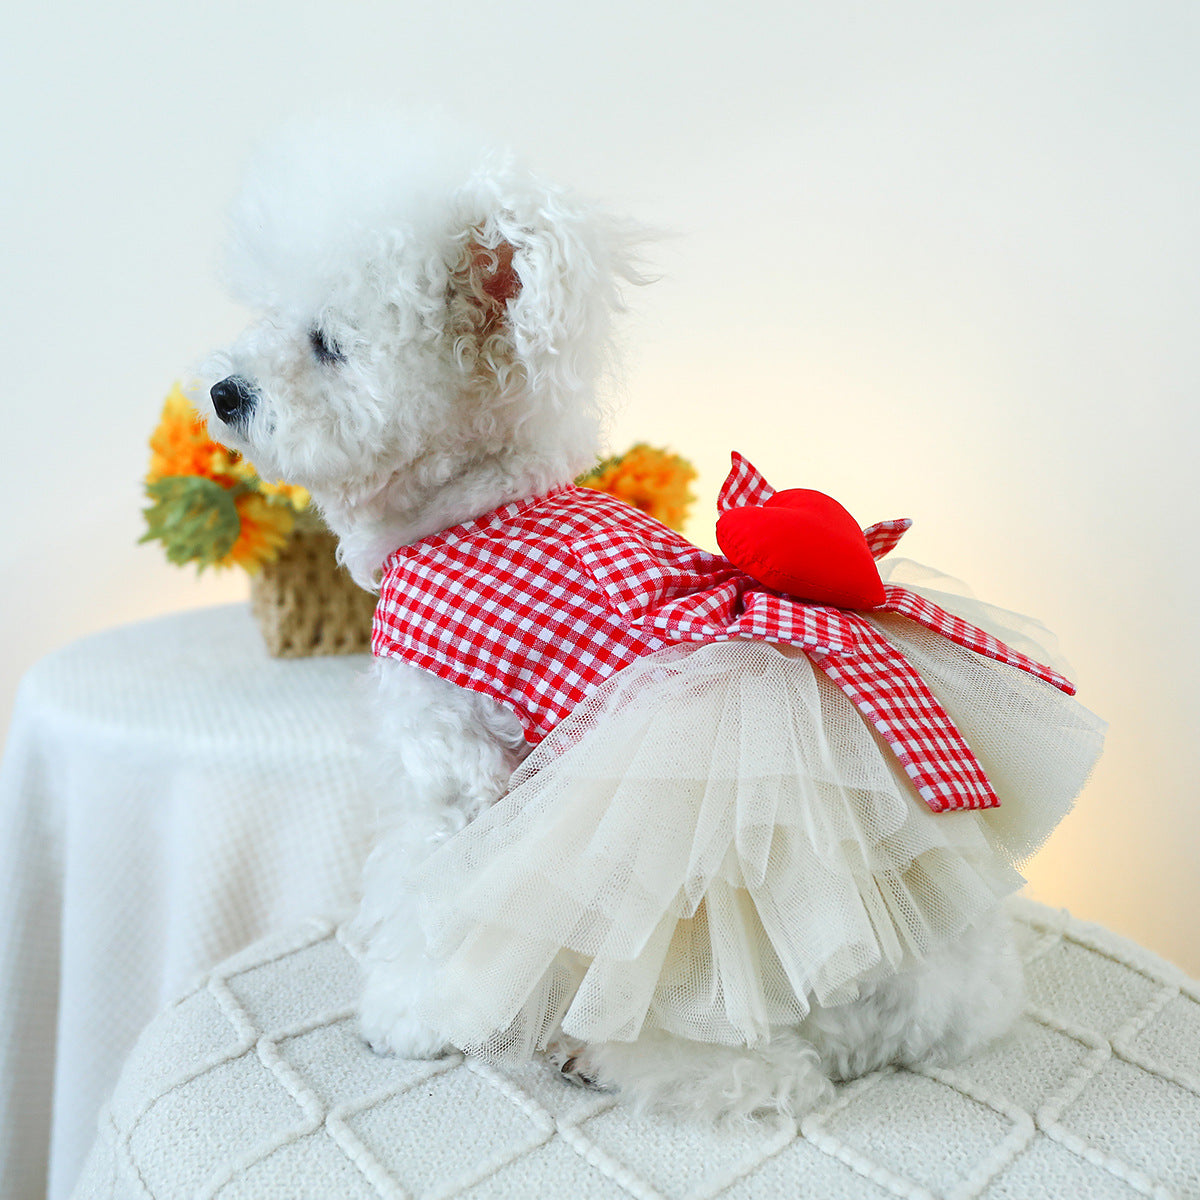 Heart Plaid Bow Dog Lace Dress